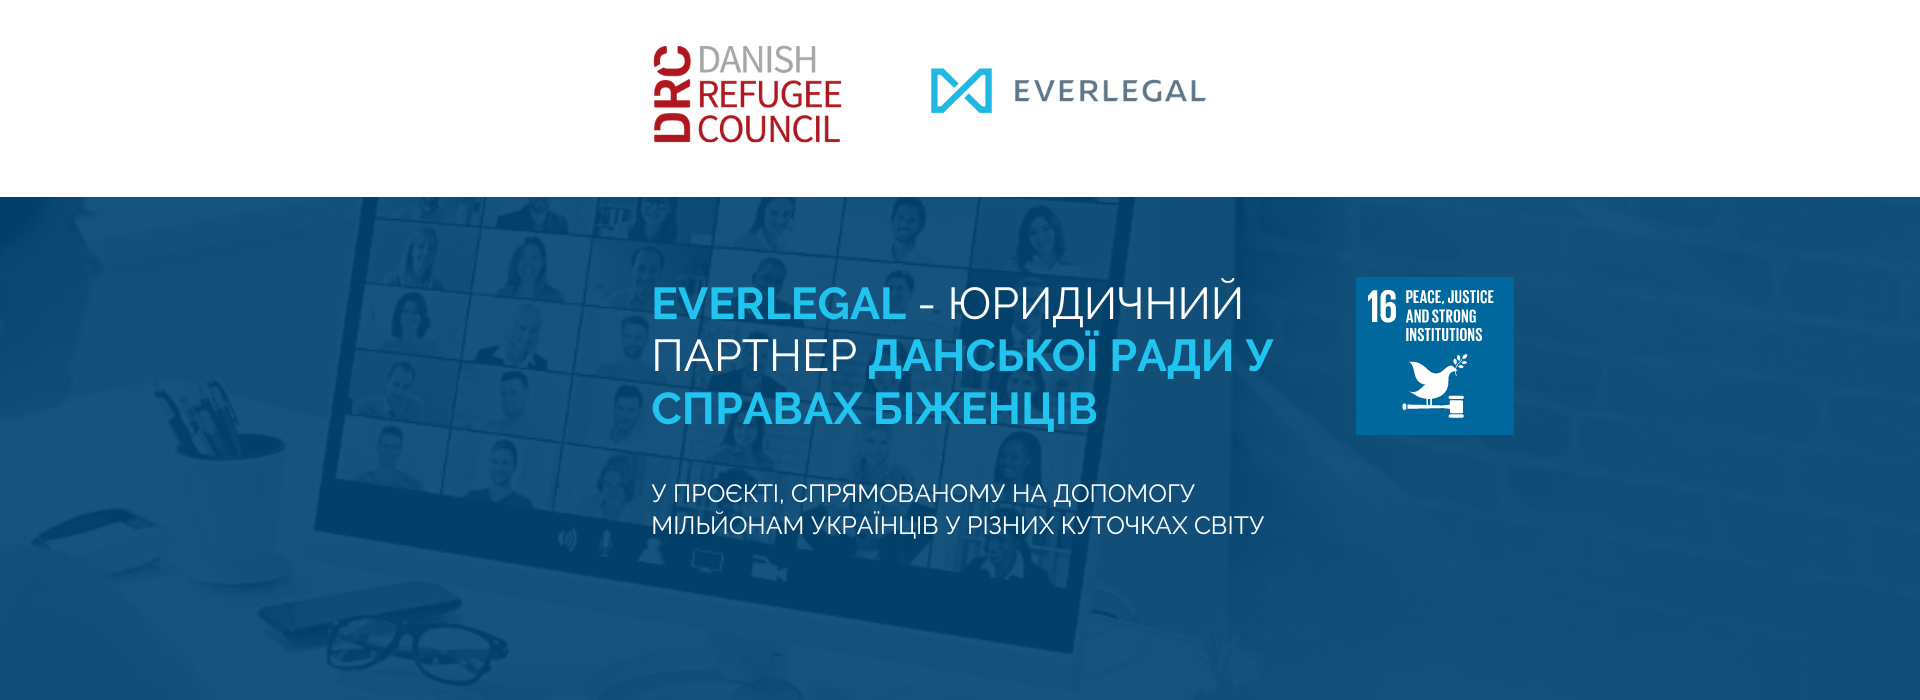 Юридична компанія EVERLEGAL розпочала співпрацю із Данською радою у справах біженців в унікальному для України інноваційному проєкті